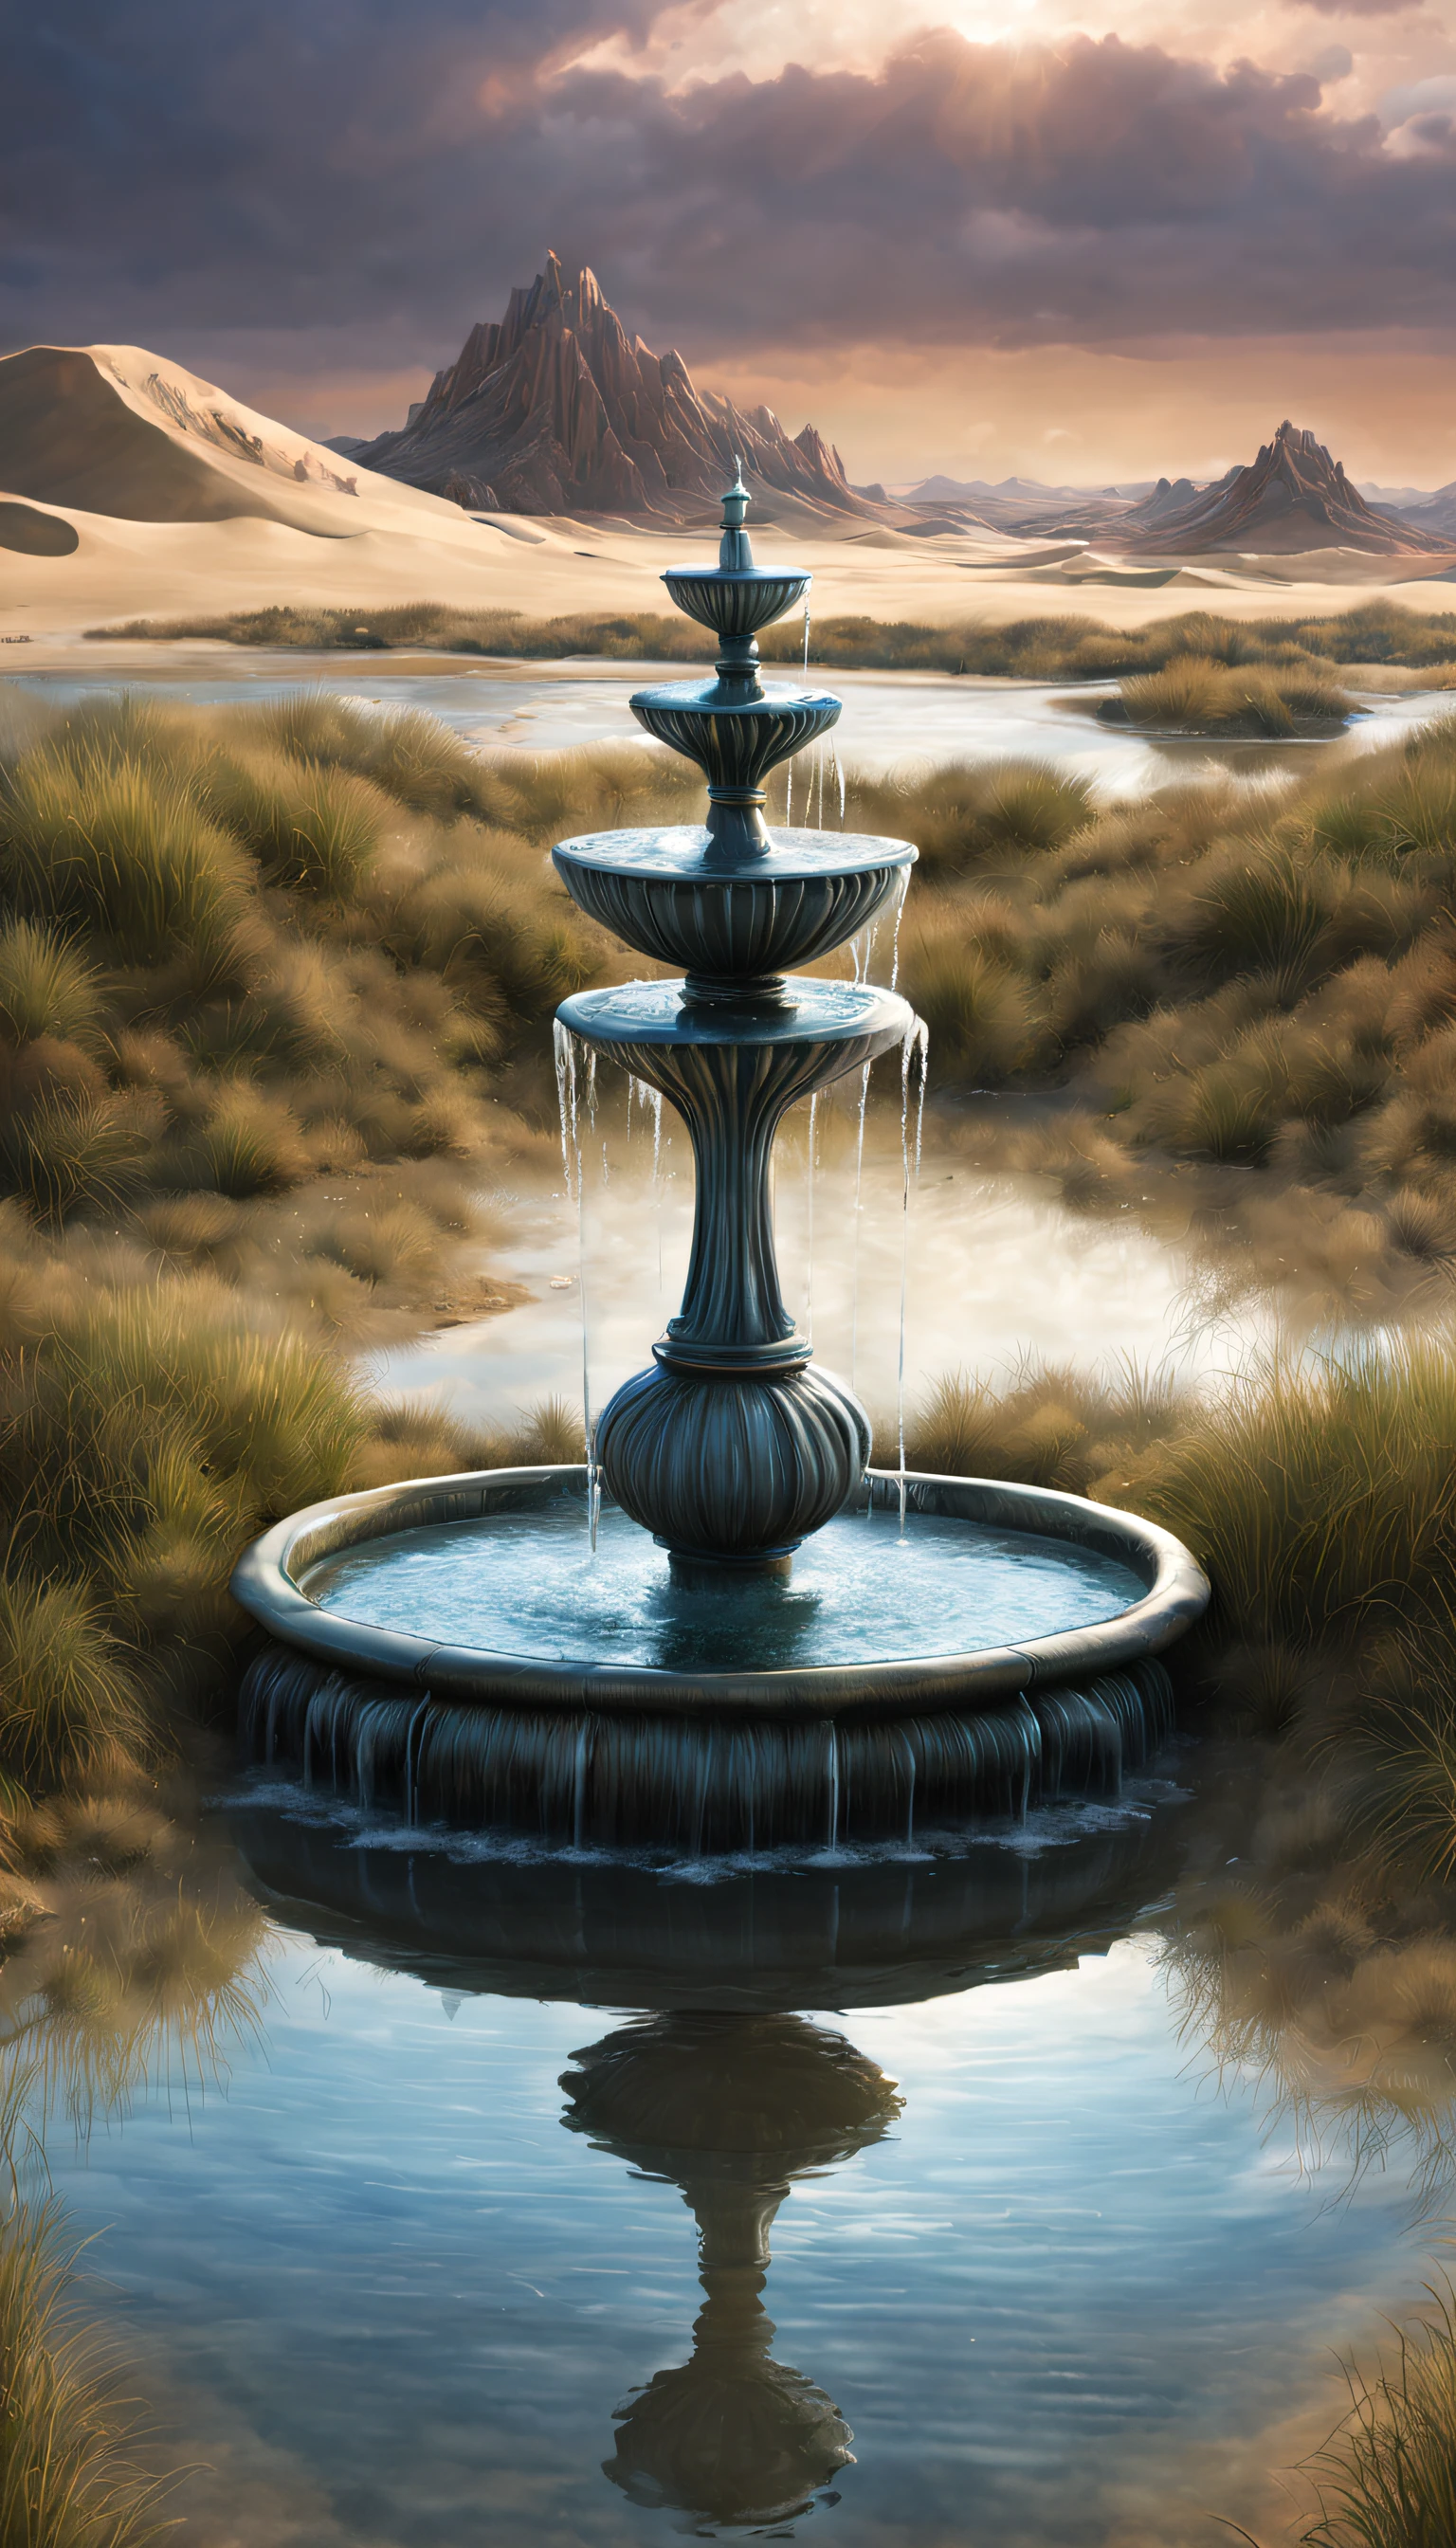 научно-фантастический, Полумеханический фонтан выбрасывает огромное количество воды.，（песчаная дюна），Фонтан，Болота，отражение в воде， сложная структура,,панк-стиль，стиль Джеральда Блума